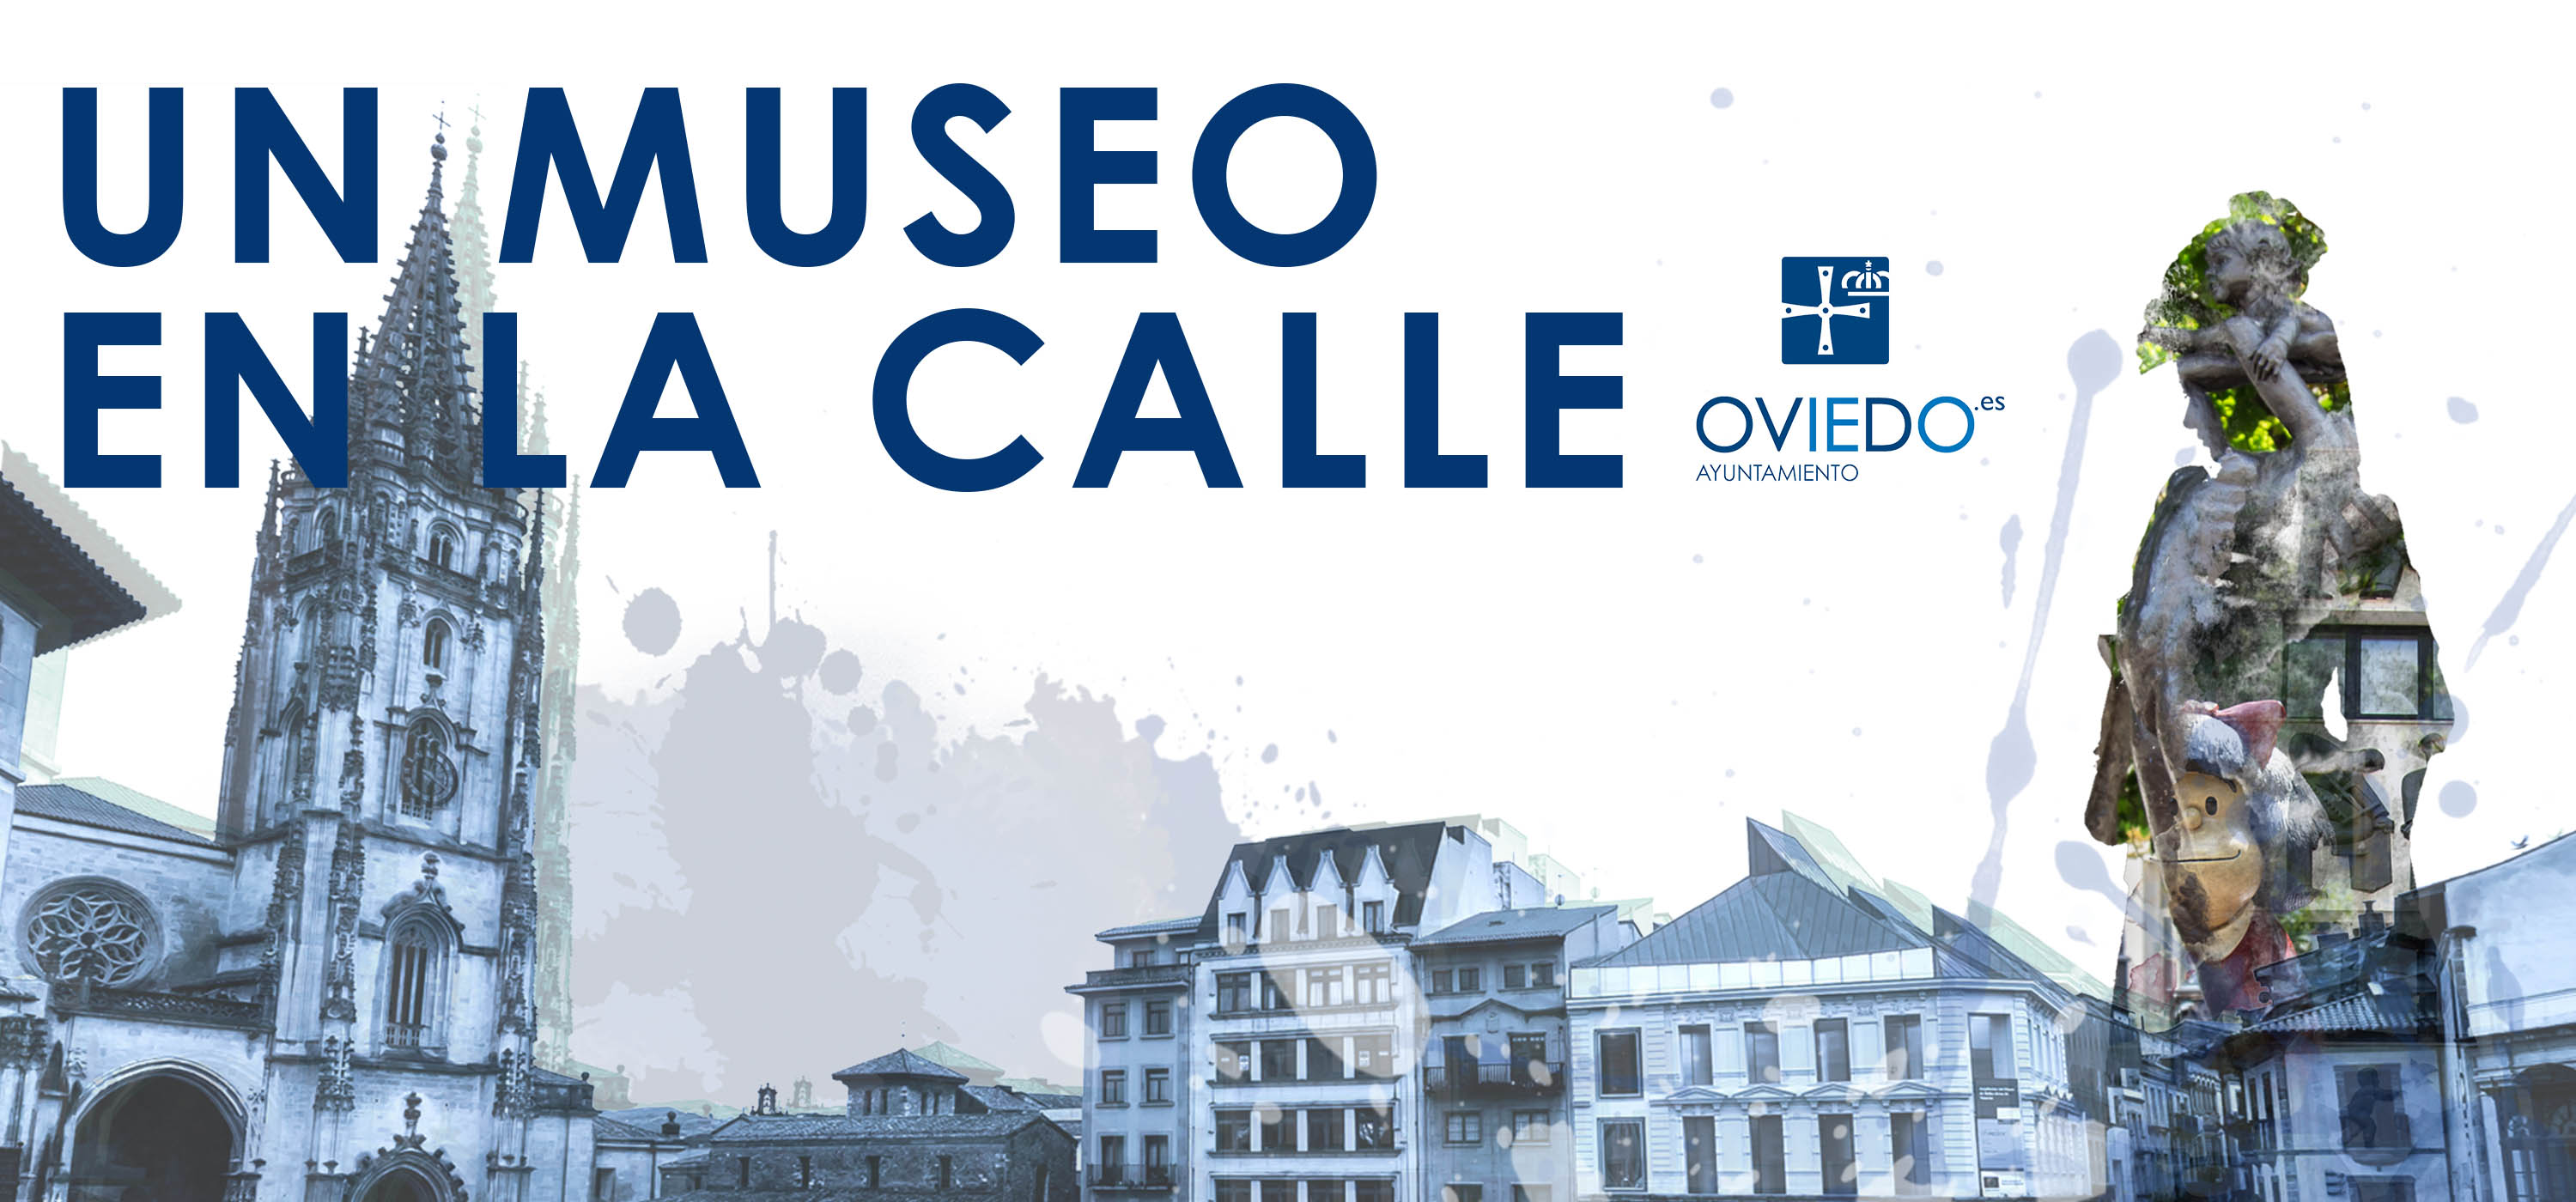 Imagen de cabecera compuesta por un montaje con elementos emblemáticos de Oviedo, plaza de la Catedral, la Regenta, Mafalda...Todo ello en tonos azulados con el rótulo superpuesto en la parte superior de 'Un museo en la calle' y el logo del Ayuntamiento de Oviedo